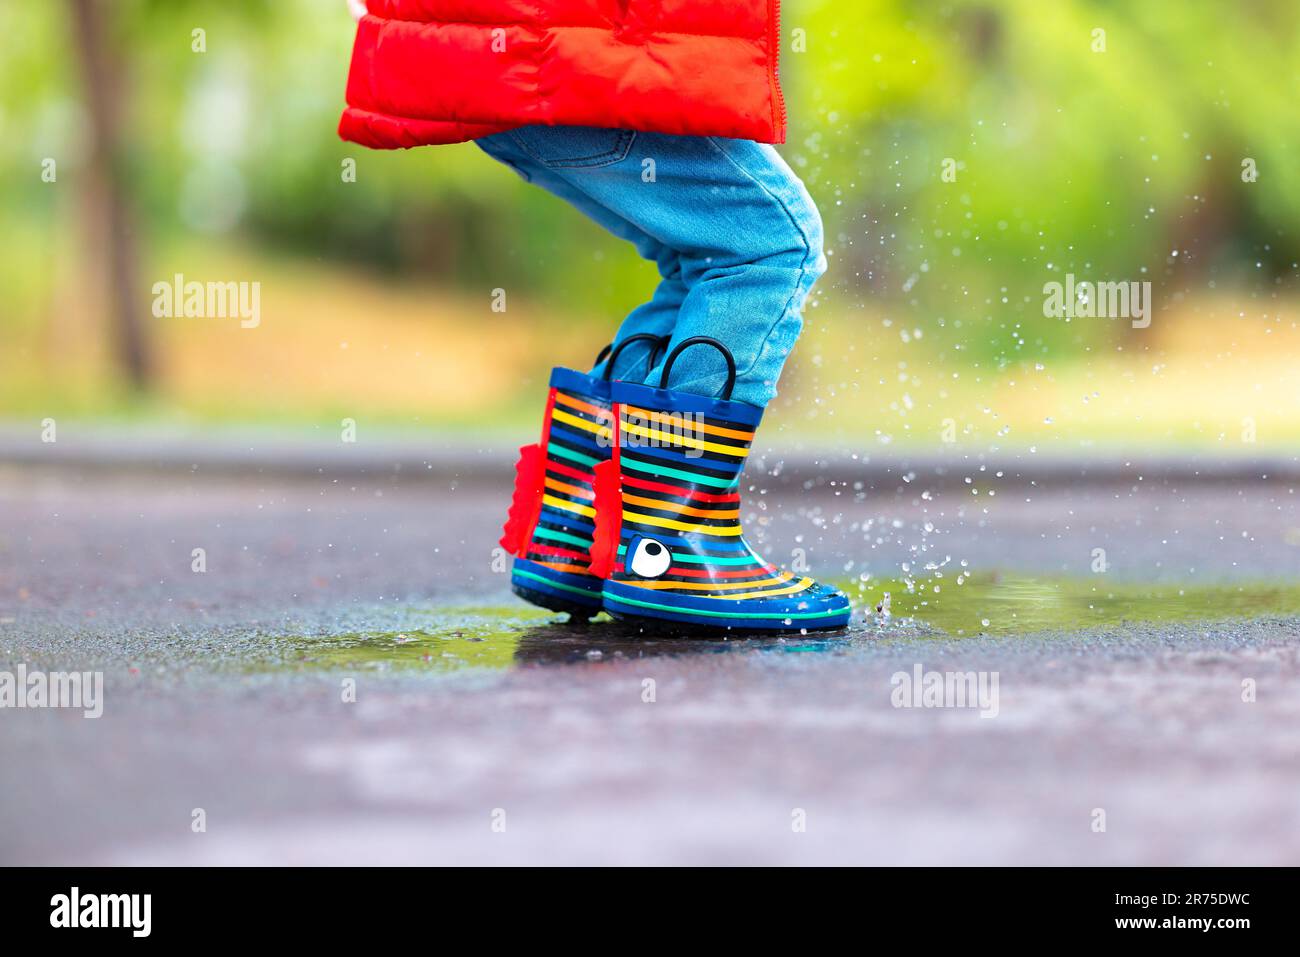 Die Füße eines Kindes in bunten Gummistiefeln springen über eine regnerische Pfütze in einem Park Stockfoto